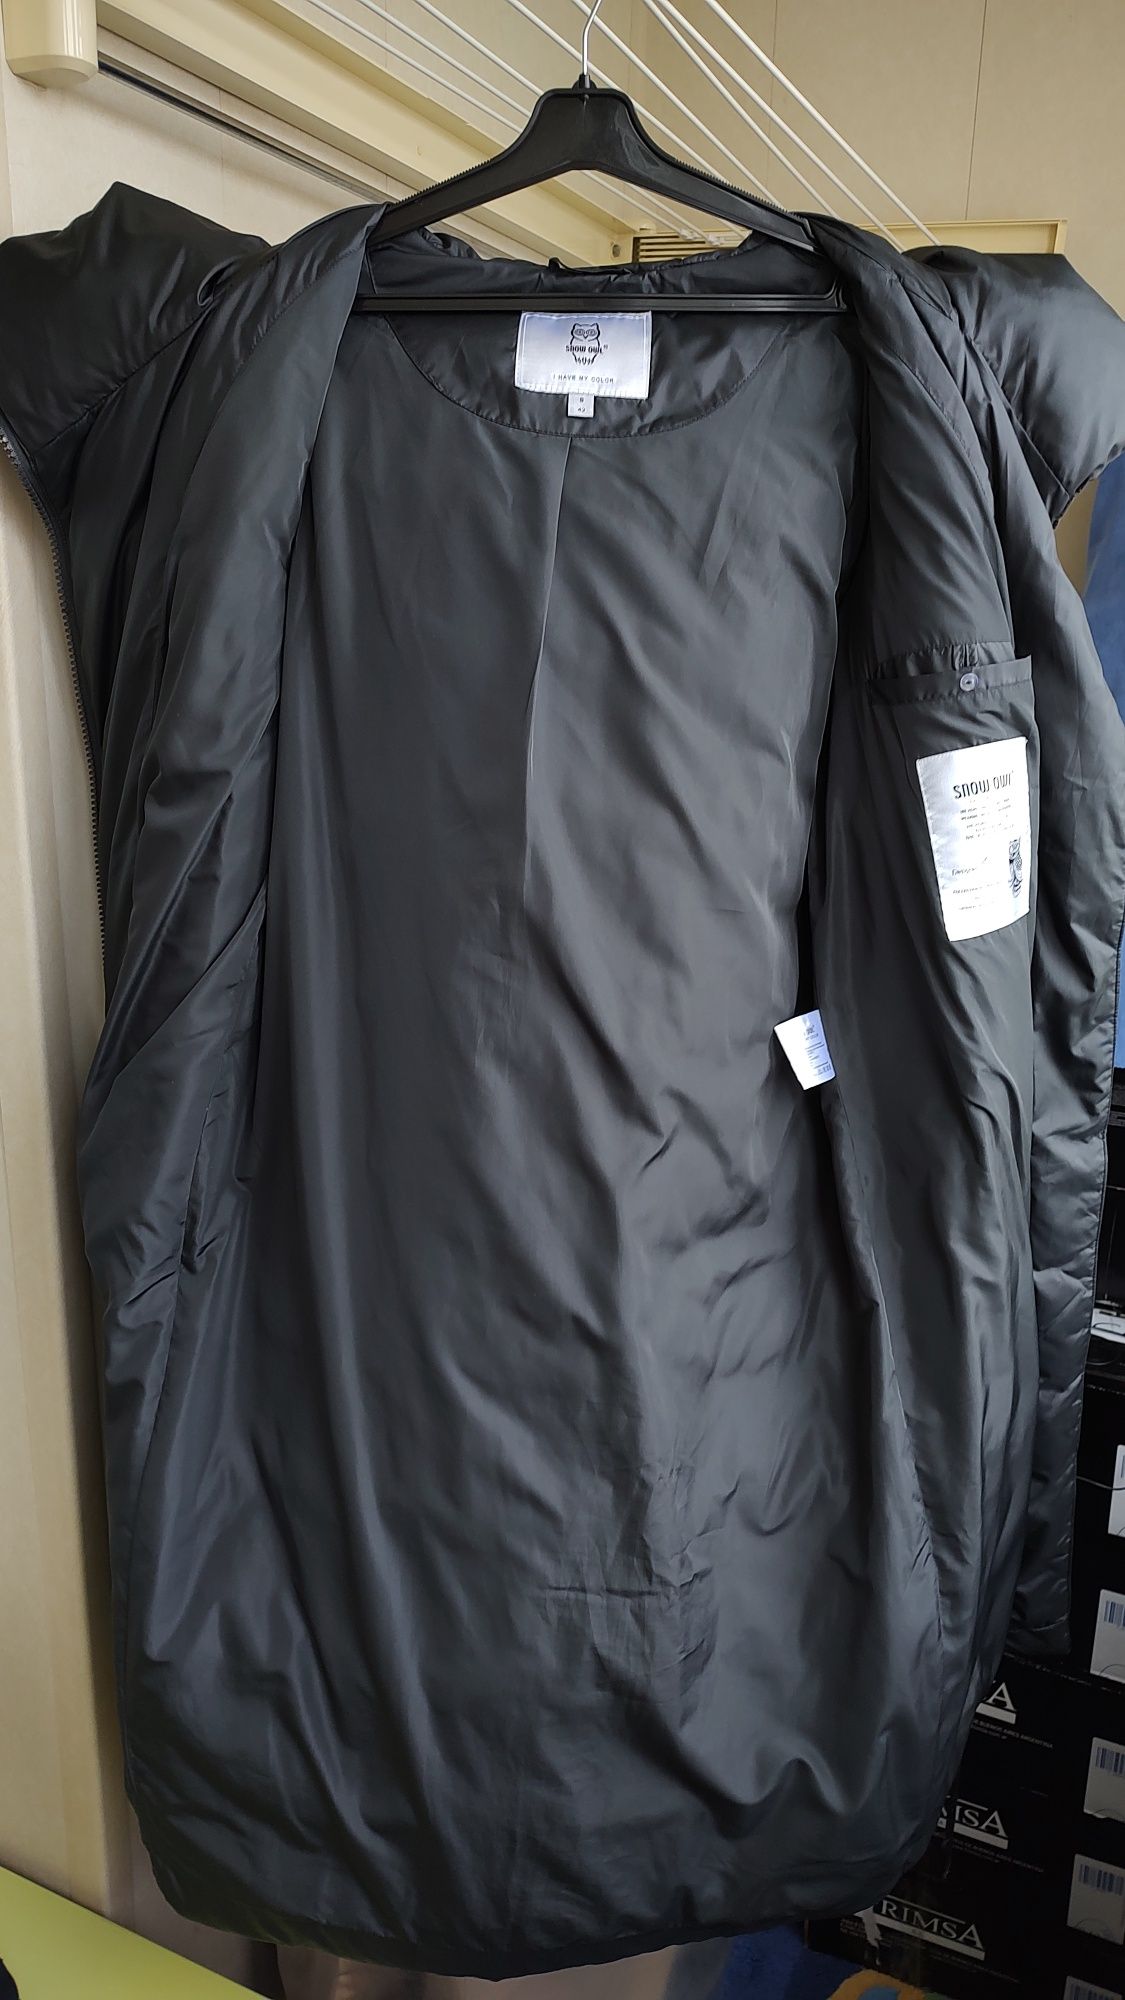 Пуховик куртка пальто snow owl clasna 42/44 36/38 розмір S 1800 грн